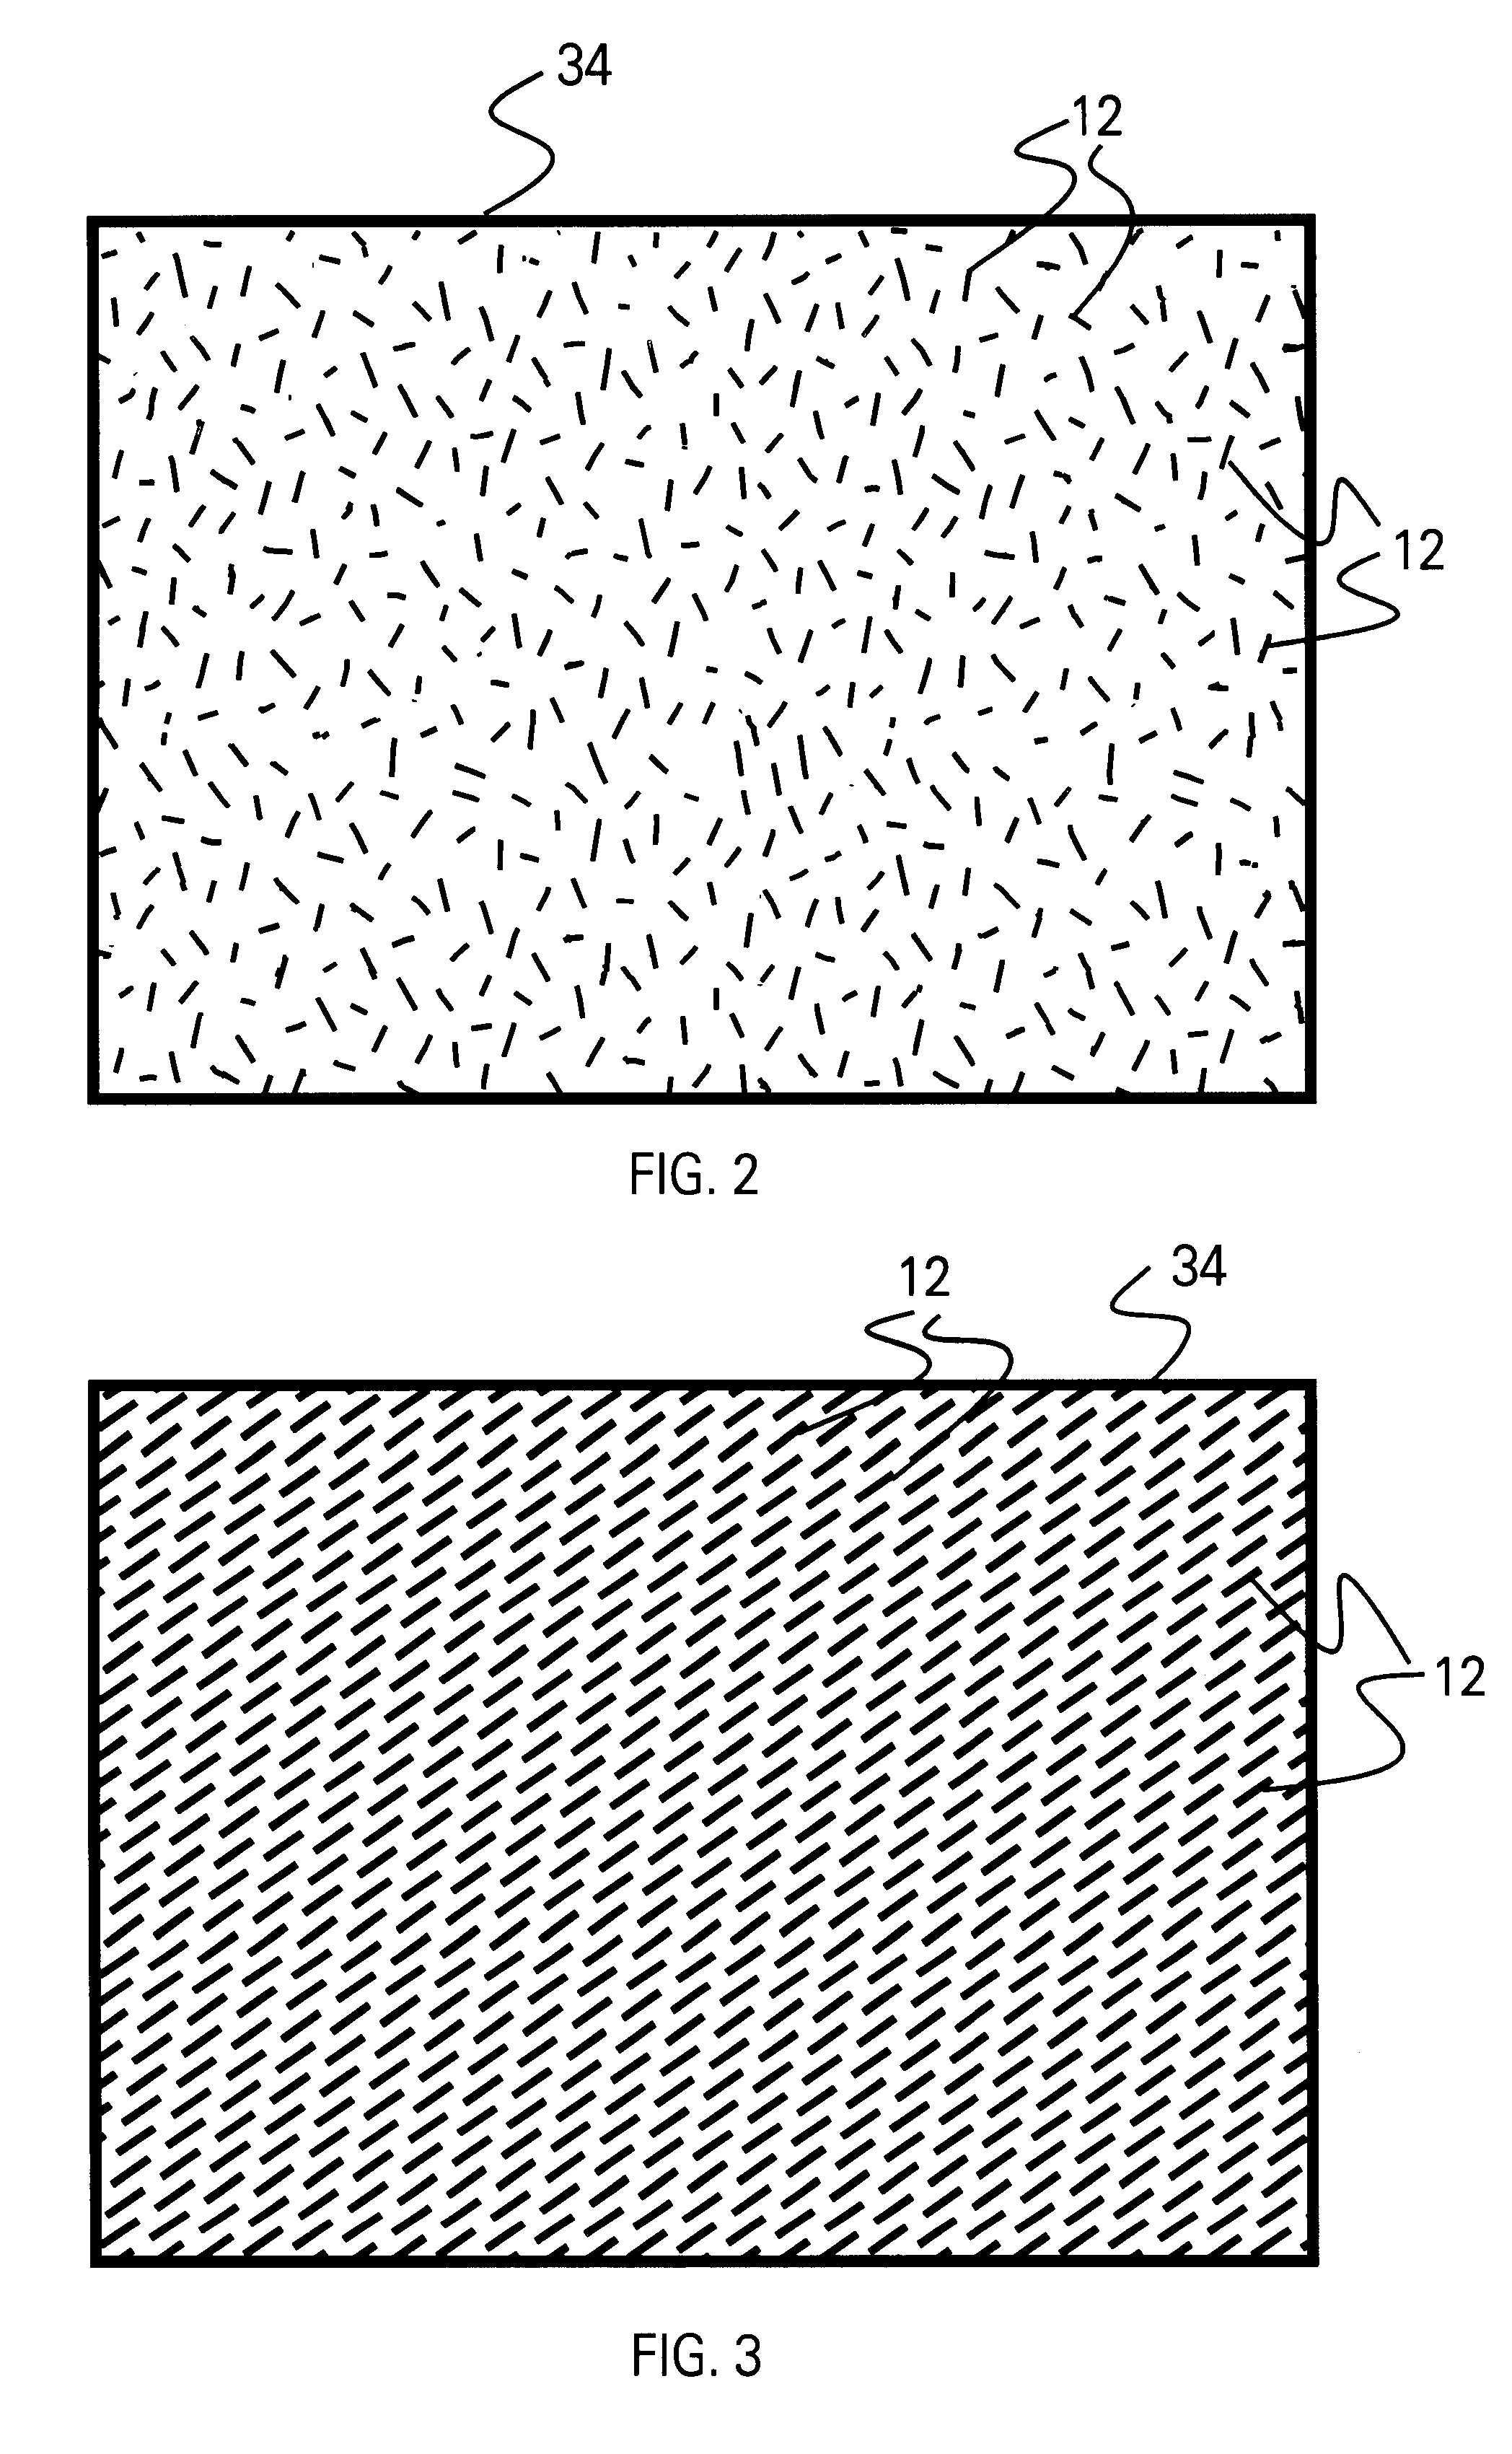 Method of aligning nanowires